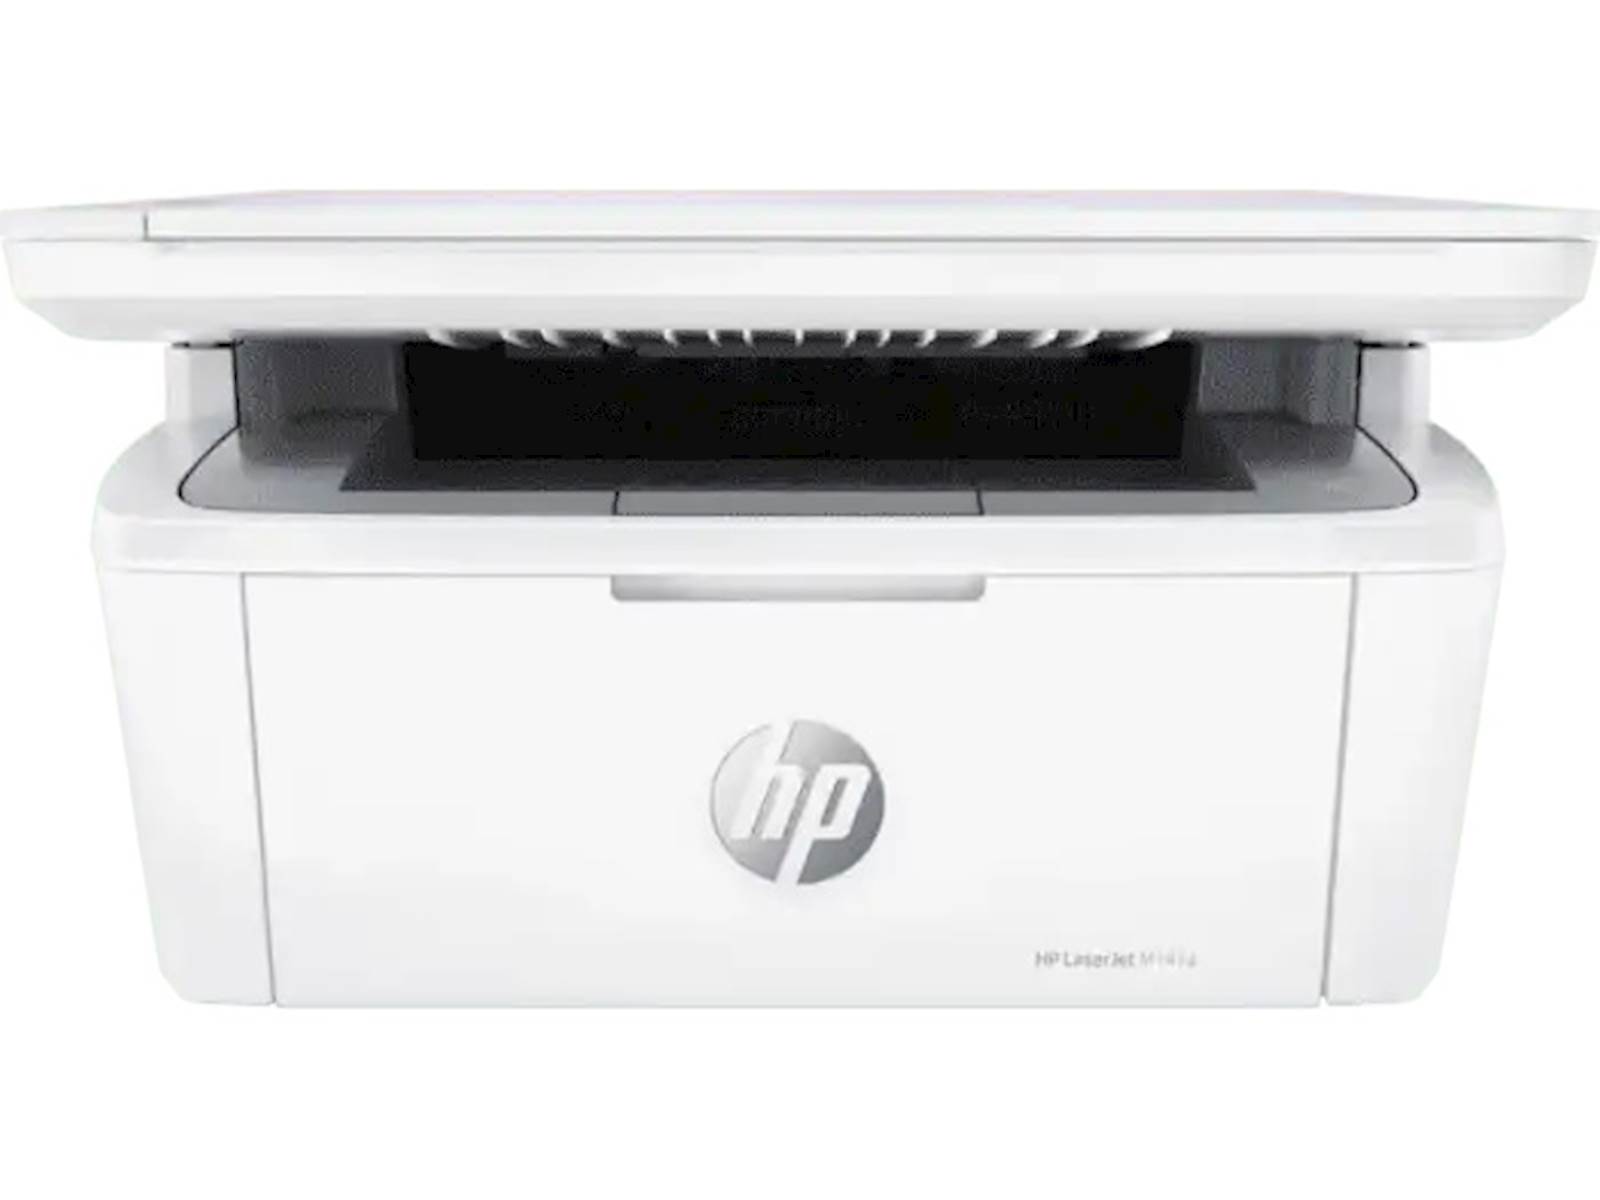 MFP HP LaserJet M141a Retail